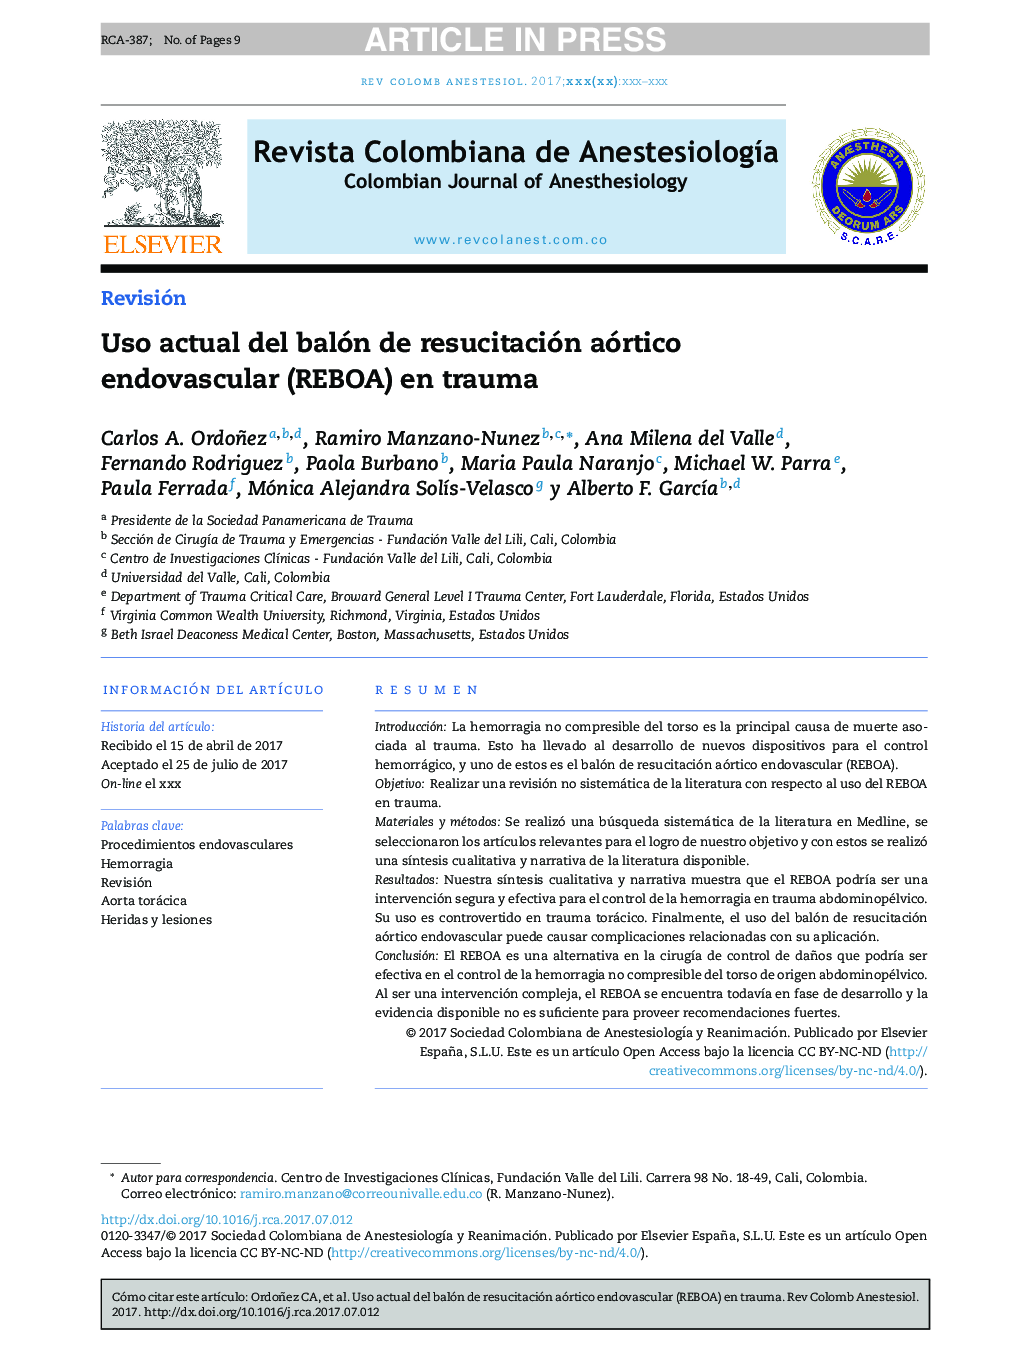 Uso actual del balón de resucitación aórtico endovascular (REBOA) en trauma